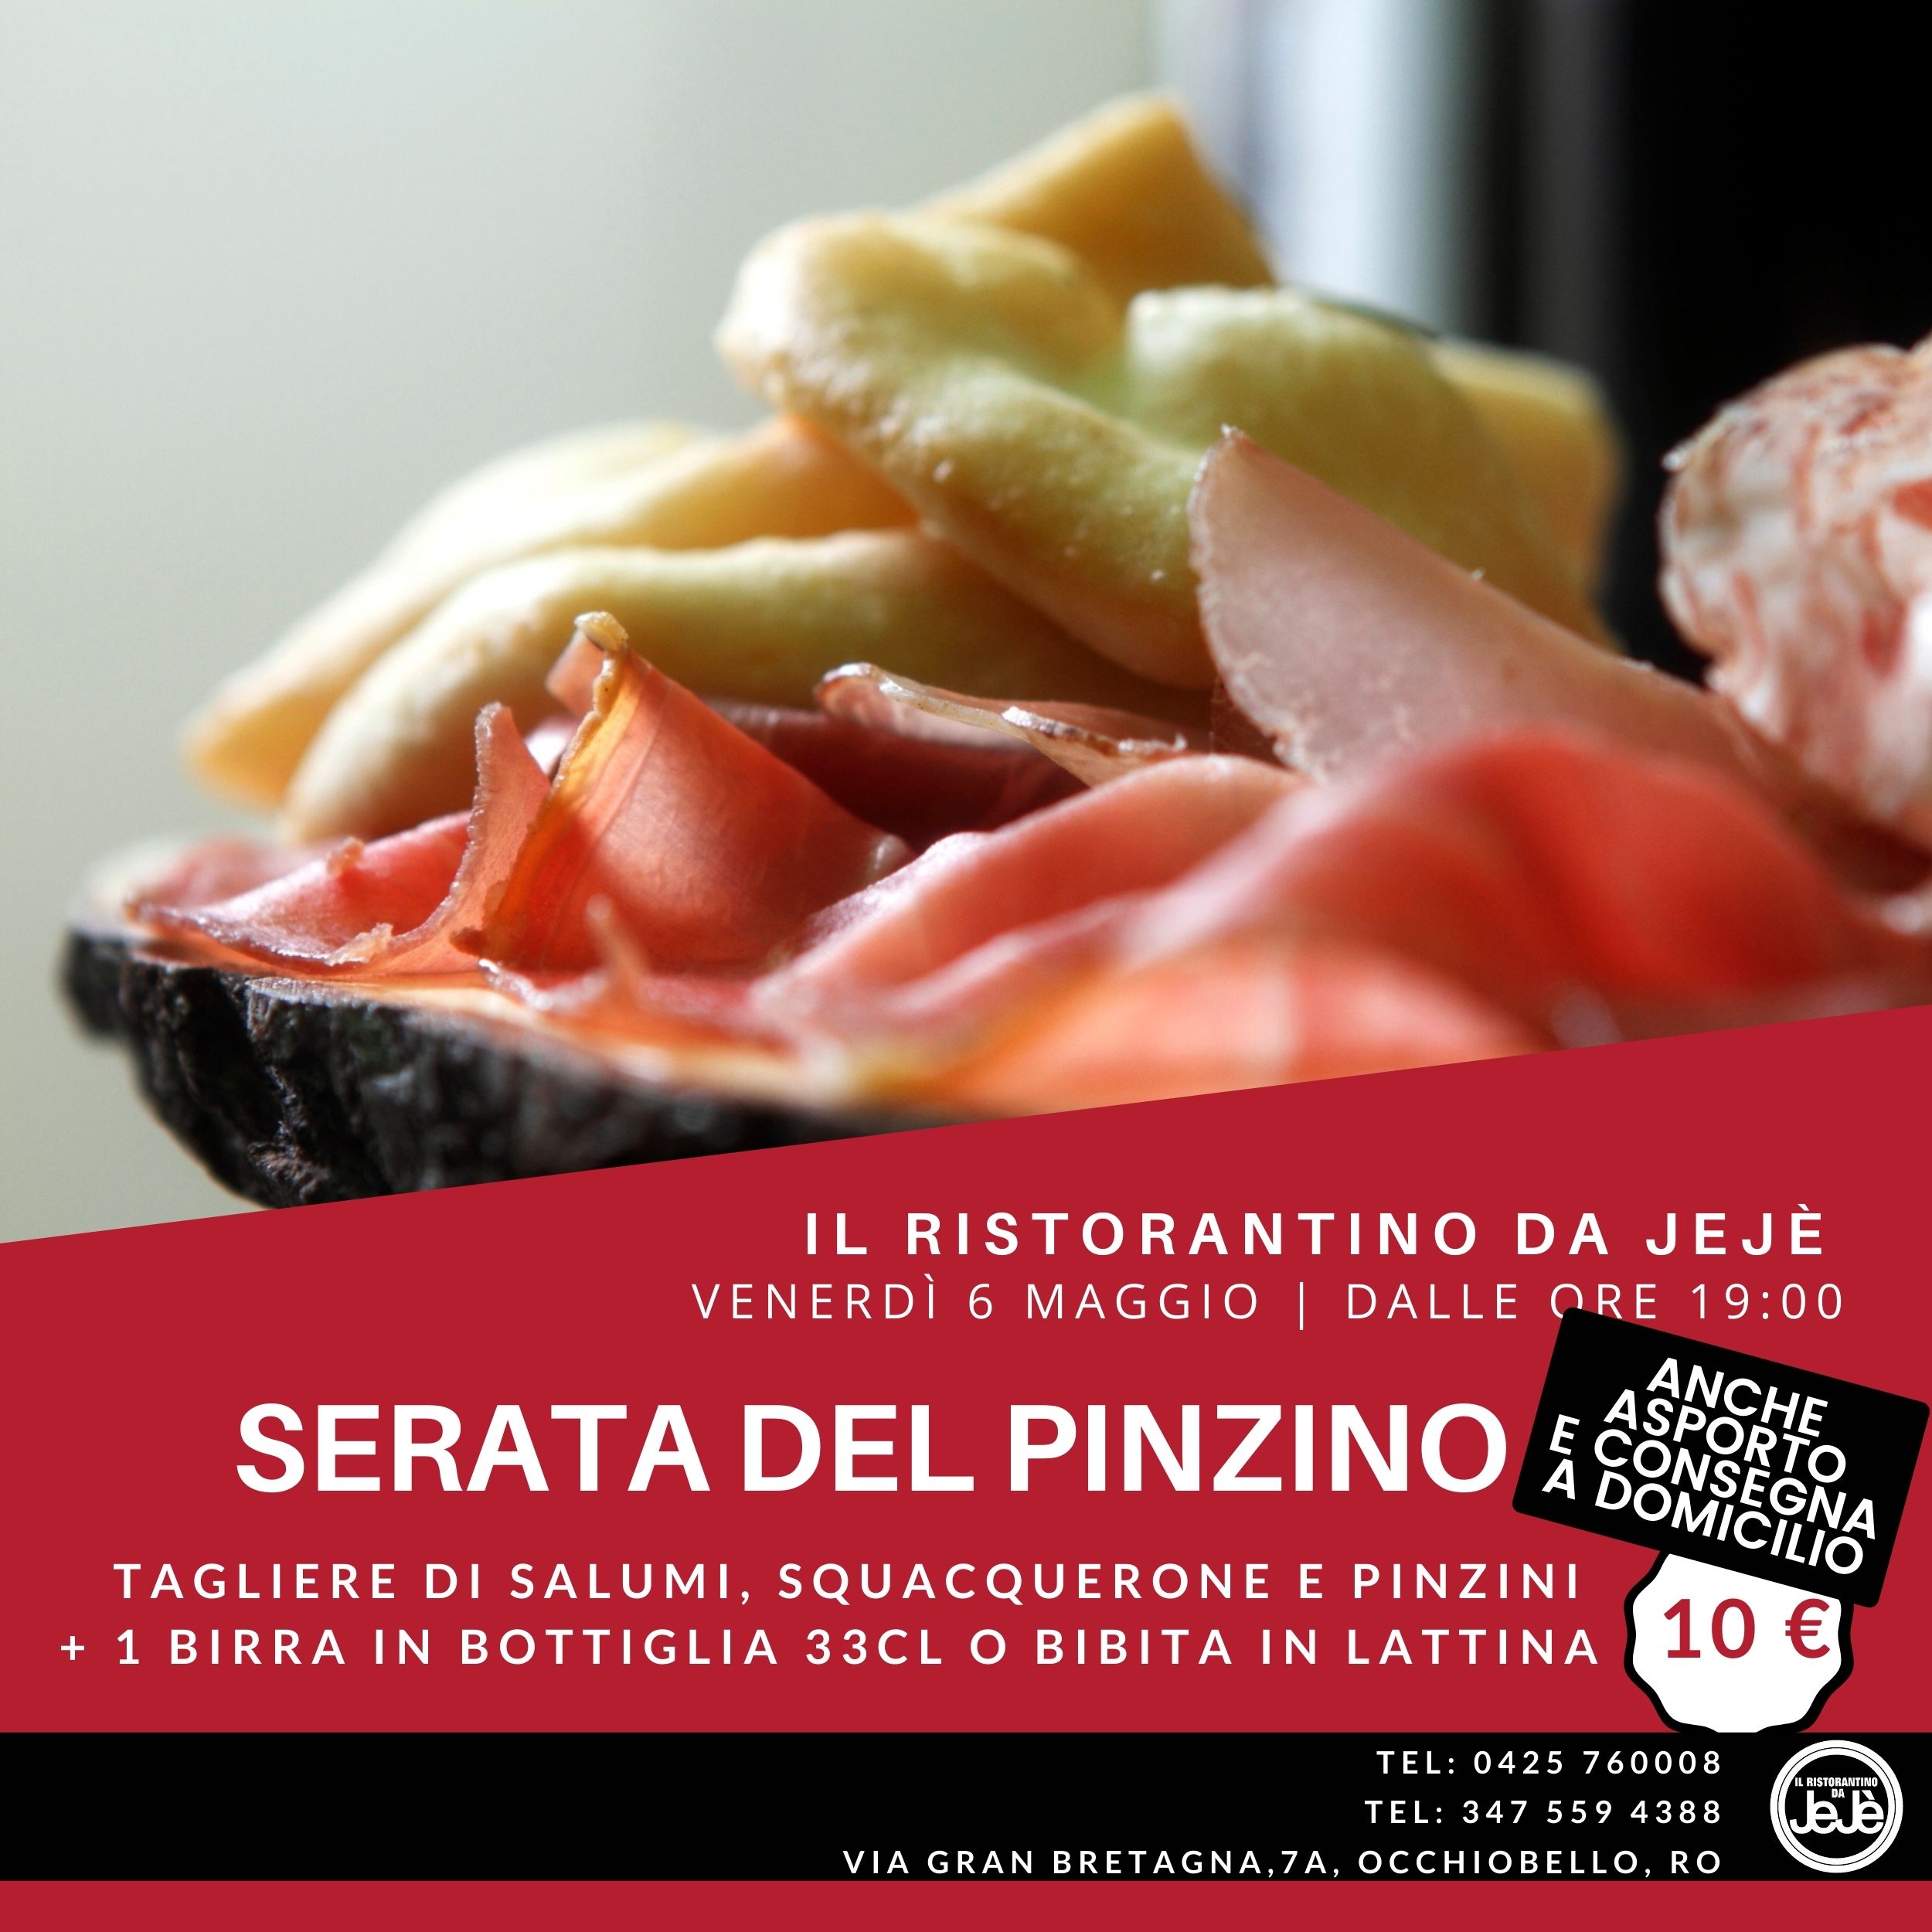 Promo SERATA DEL PINZINO - Ristorante Pizzeria da Jejè